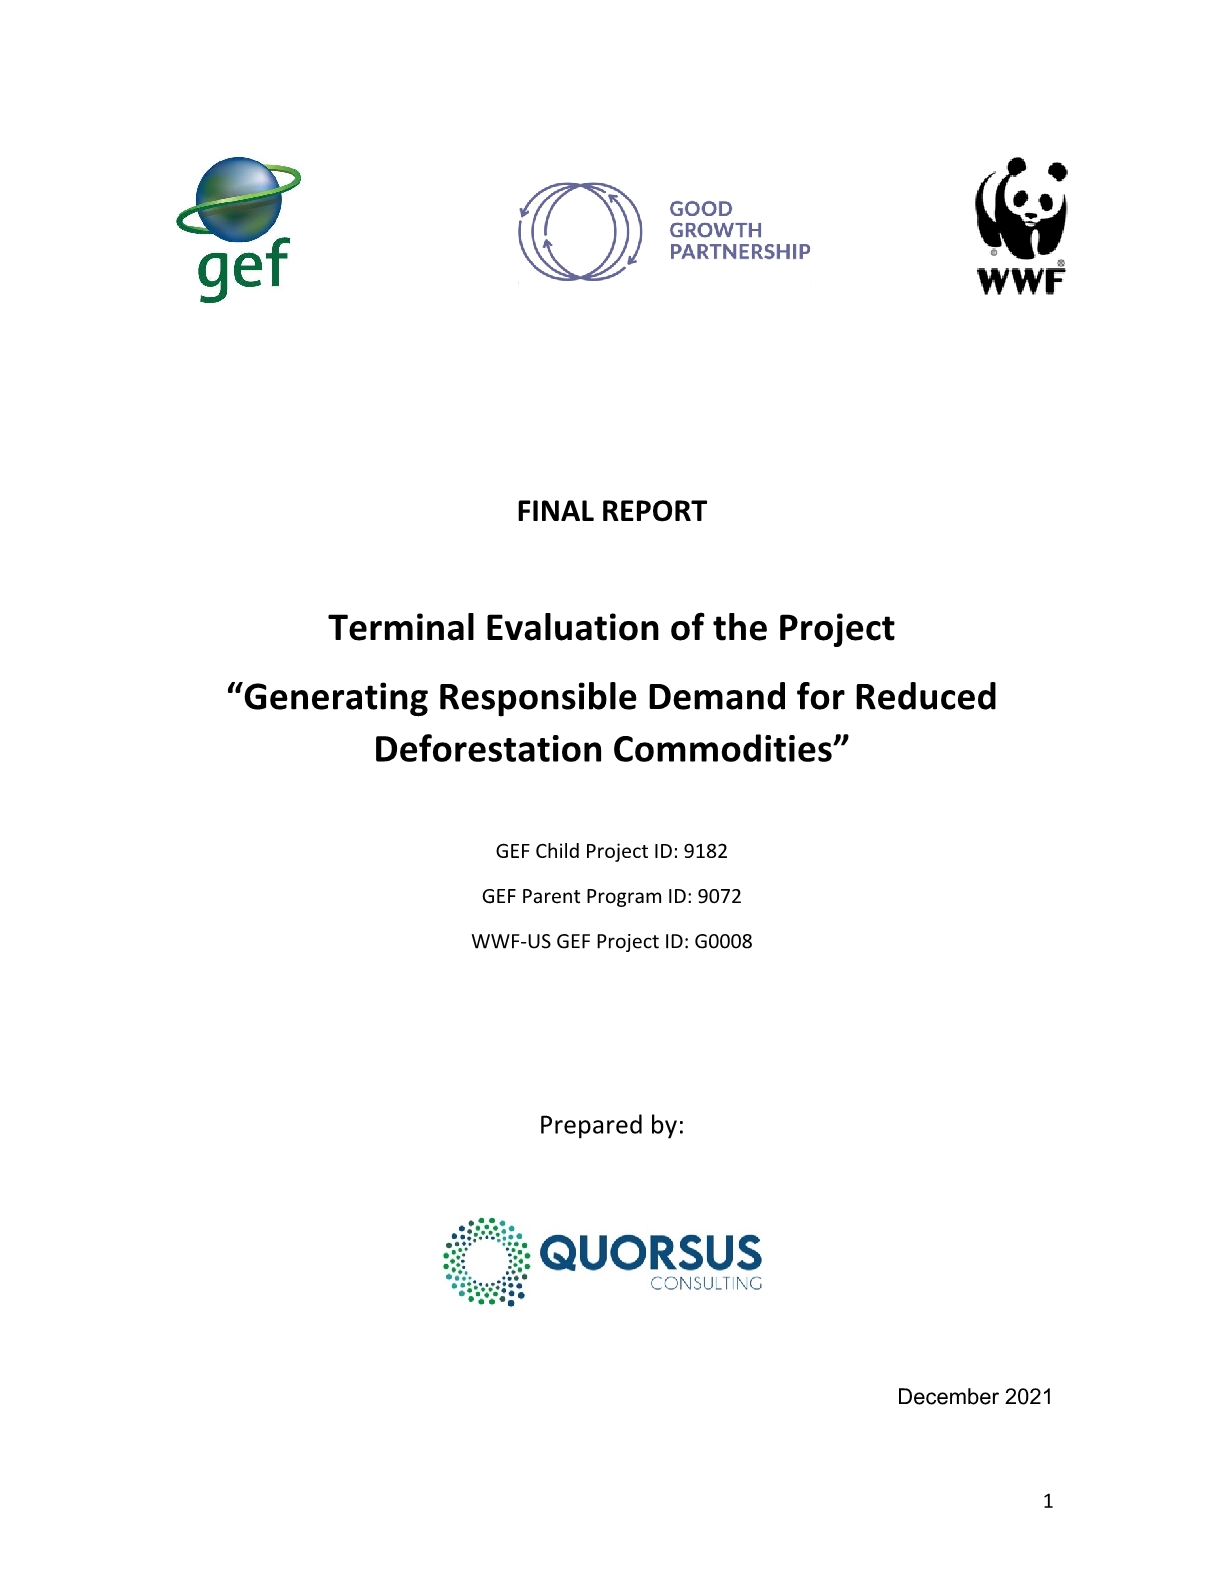 Evaluación final del Proyecto “Generando Demanda Responsable para Commodities de Deforestación reducida”